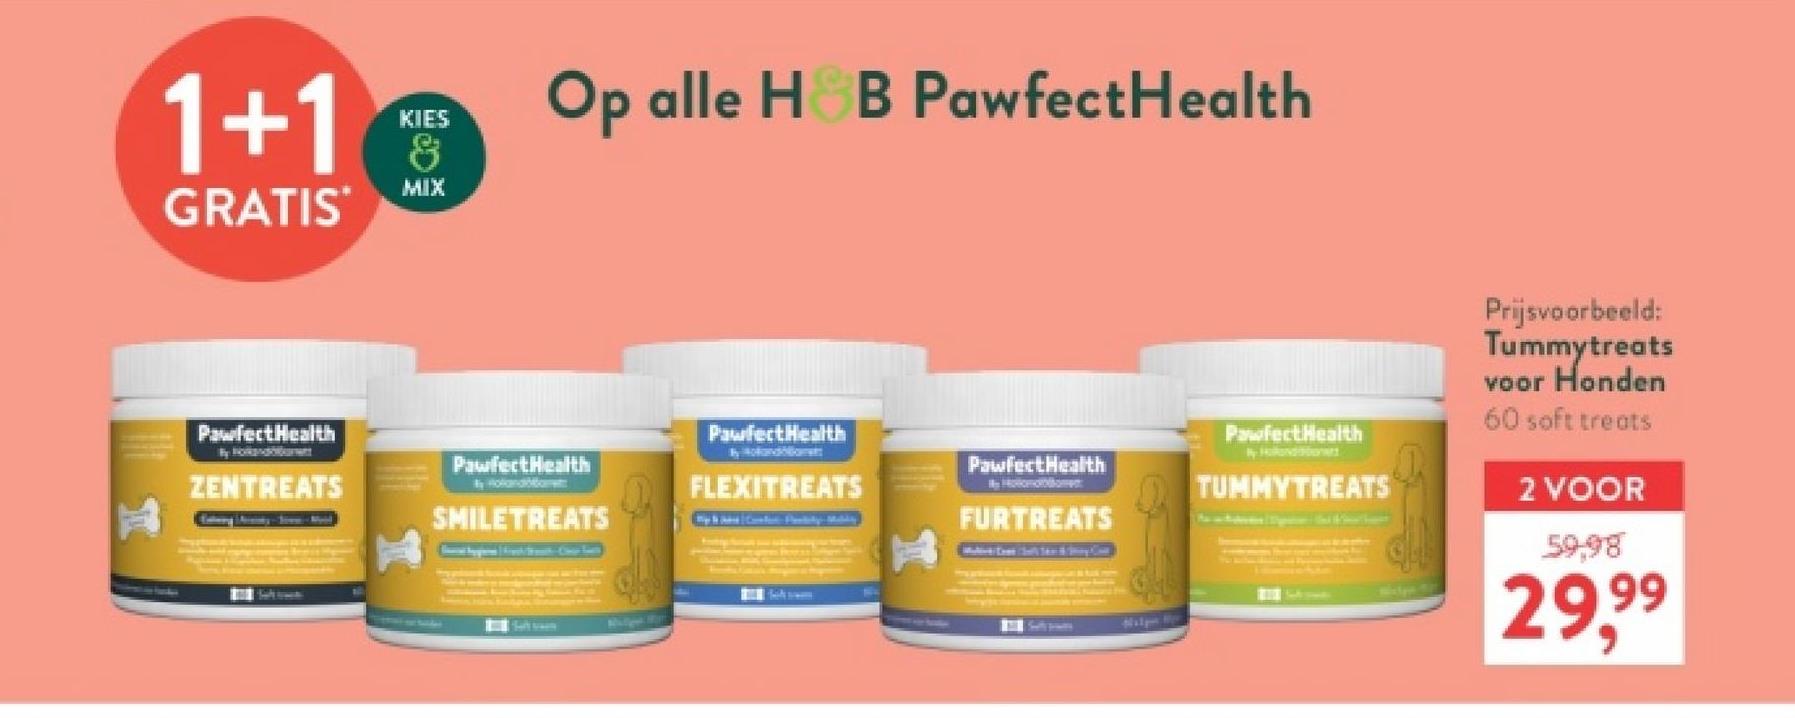 1+1
GRATIS
KIES
&
MIX
Op alle H&B Pawfect Health
PawfectHealth
Prijsvoorbeeld:
Tummytreats
voor Honden
60 soft treats
2 VOOR
59.98
29,99
PawfectHealth
PawfectHealth
Hobo
PawfectHealth
PawfectHealth
ZENTREATS
Holandament
FLEXITREATS
en
TUMMYTREATS
SMILETREATS
FURTREATS